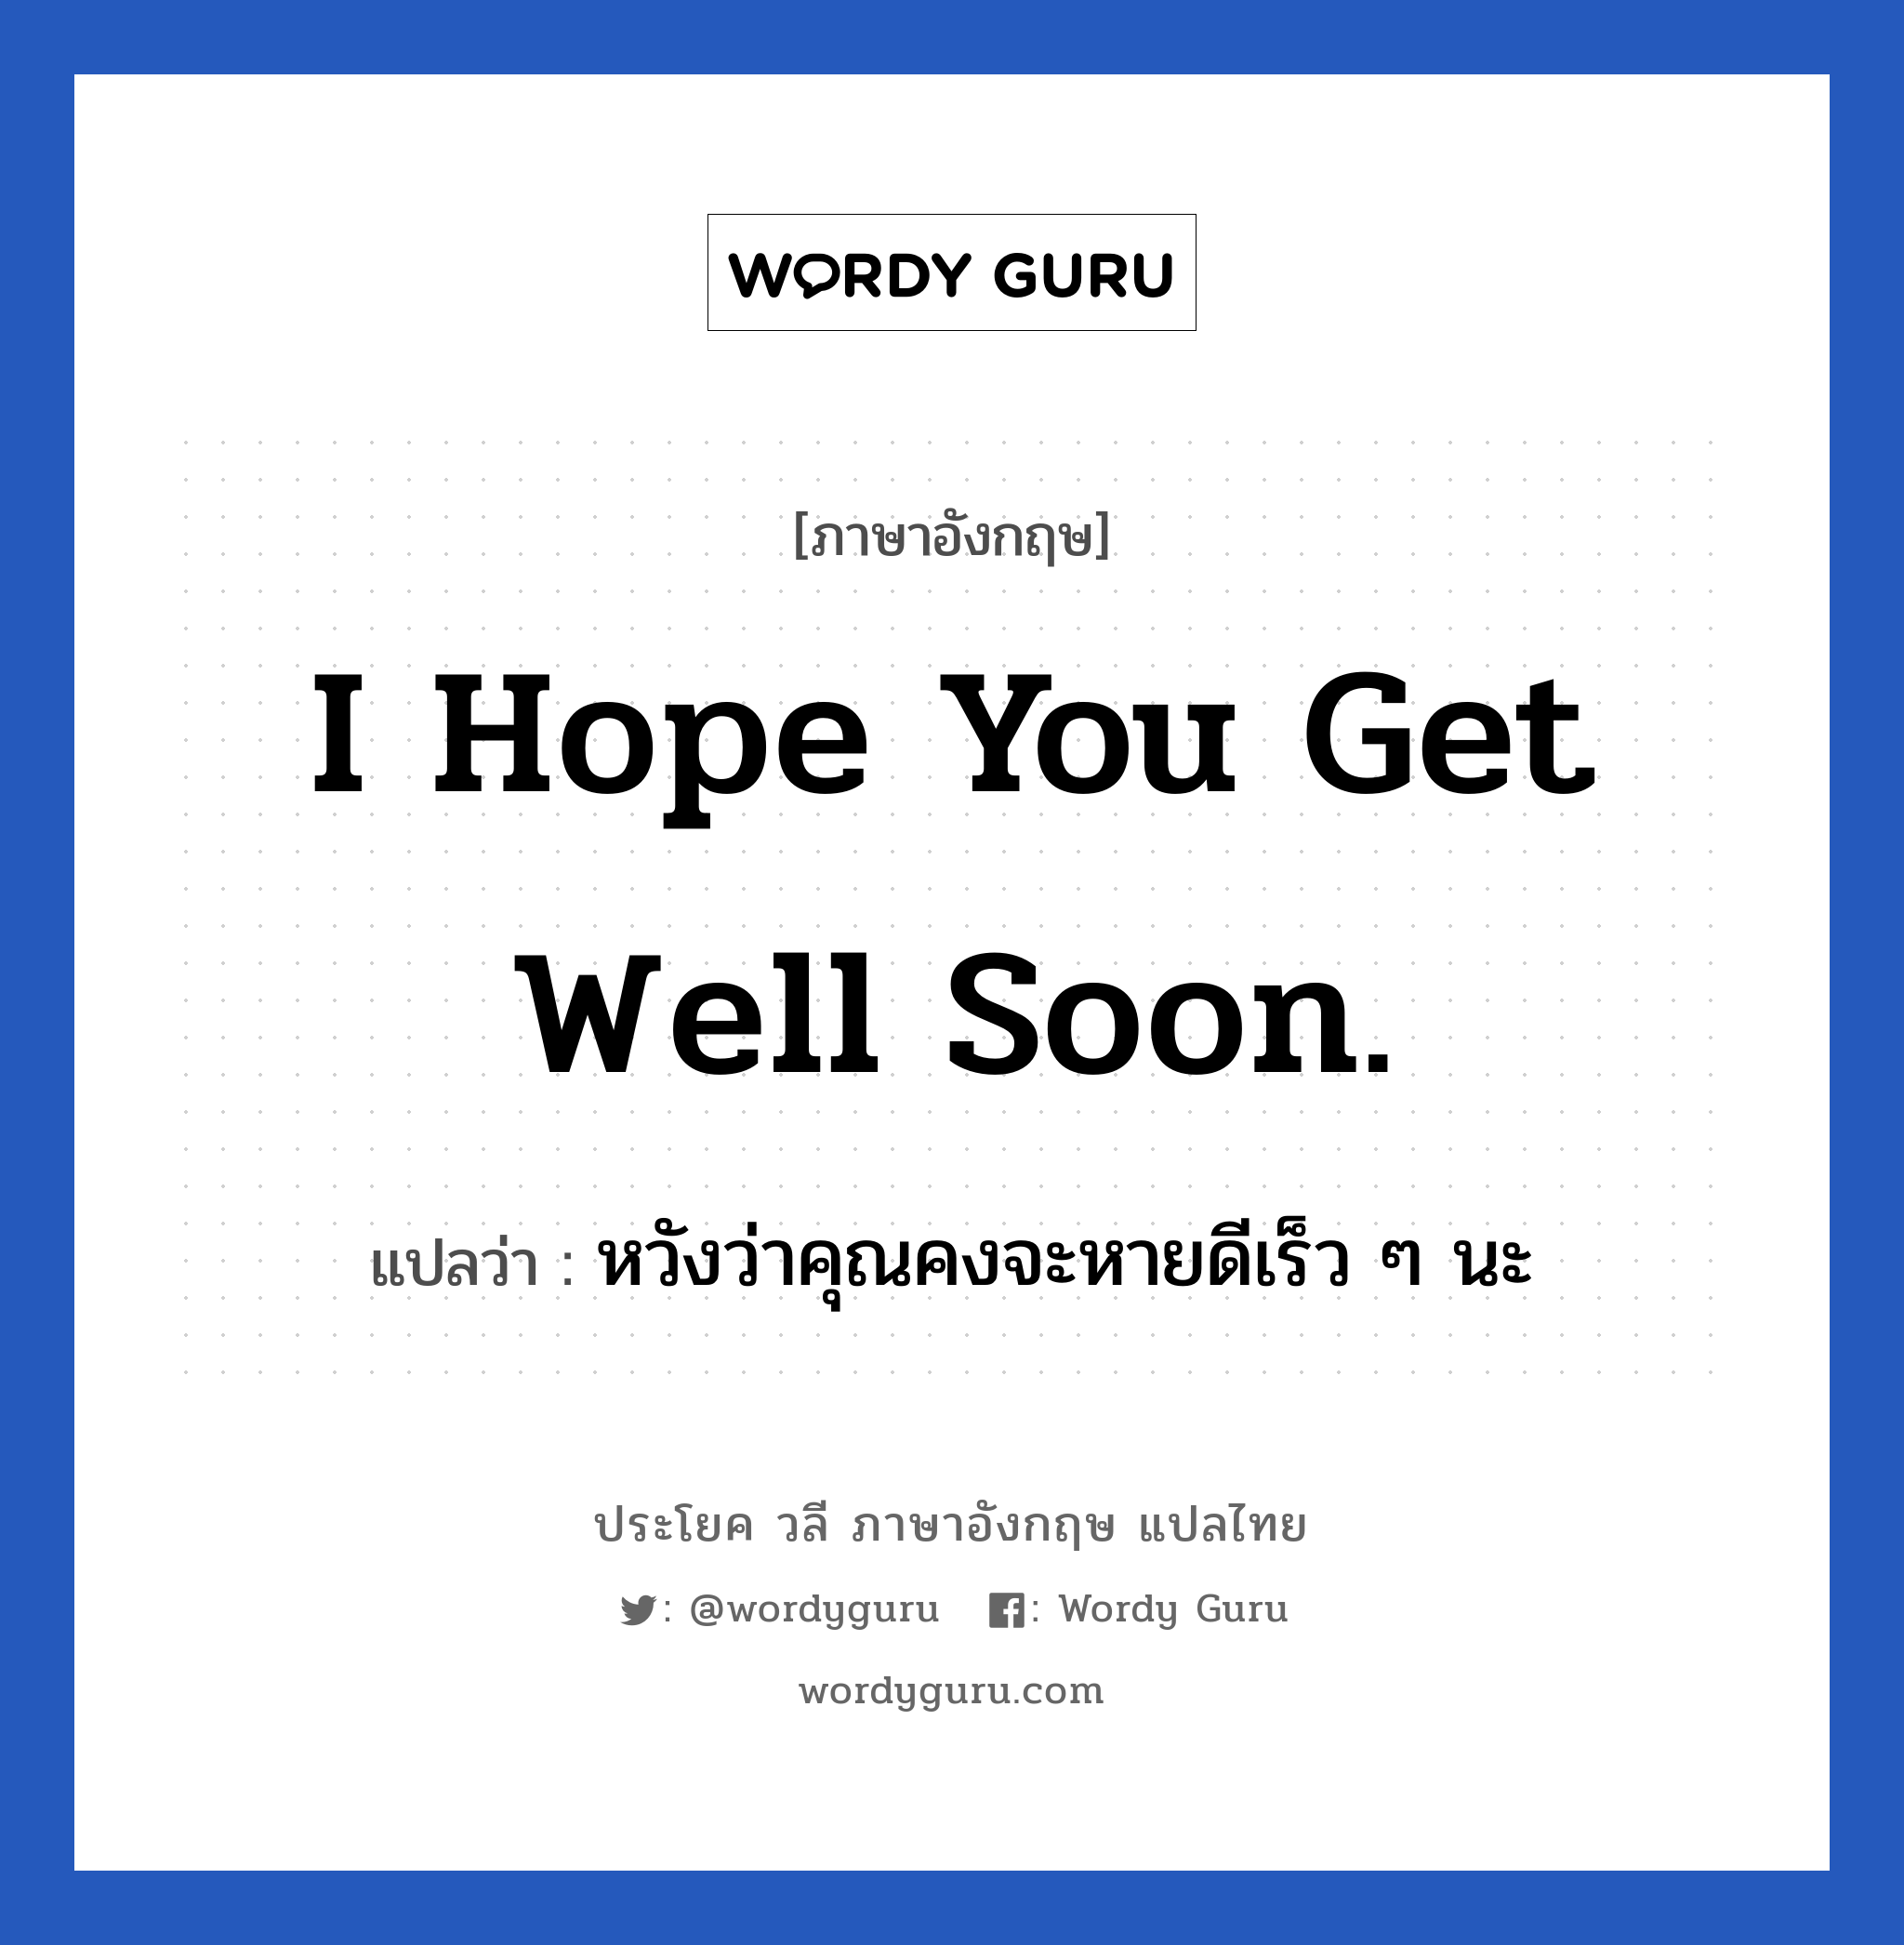 I hope you get well soon. แปลว่า? เป็นประโยคในกลุ่มประเภท ให้กำลังใจ, วลีภาษาอังกฤษ I hope you get well soon. แปลว่า หวังว่าคุณคงจะหายดีเร็ว ๆ นะ หมวด ให้กำลังใจ